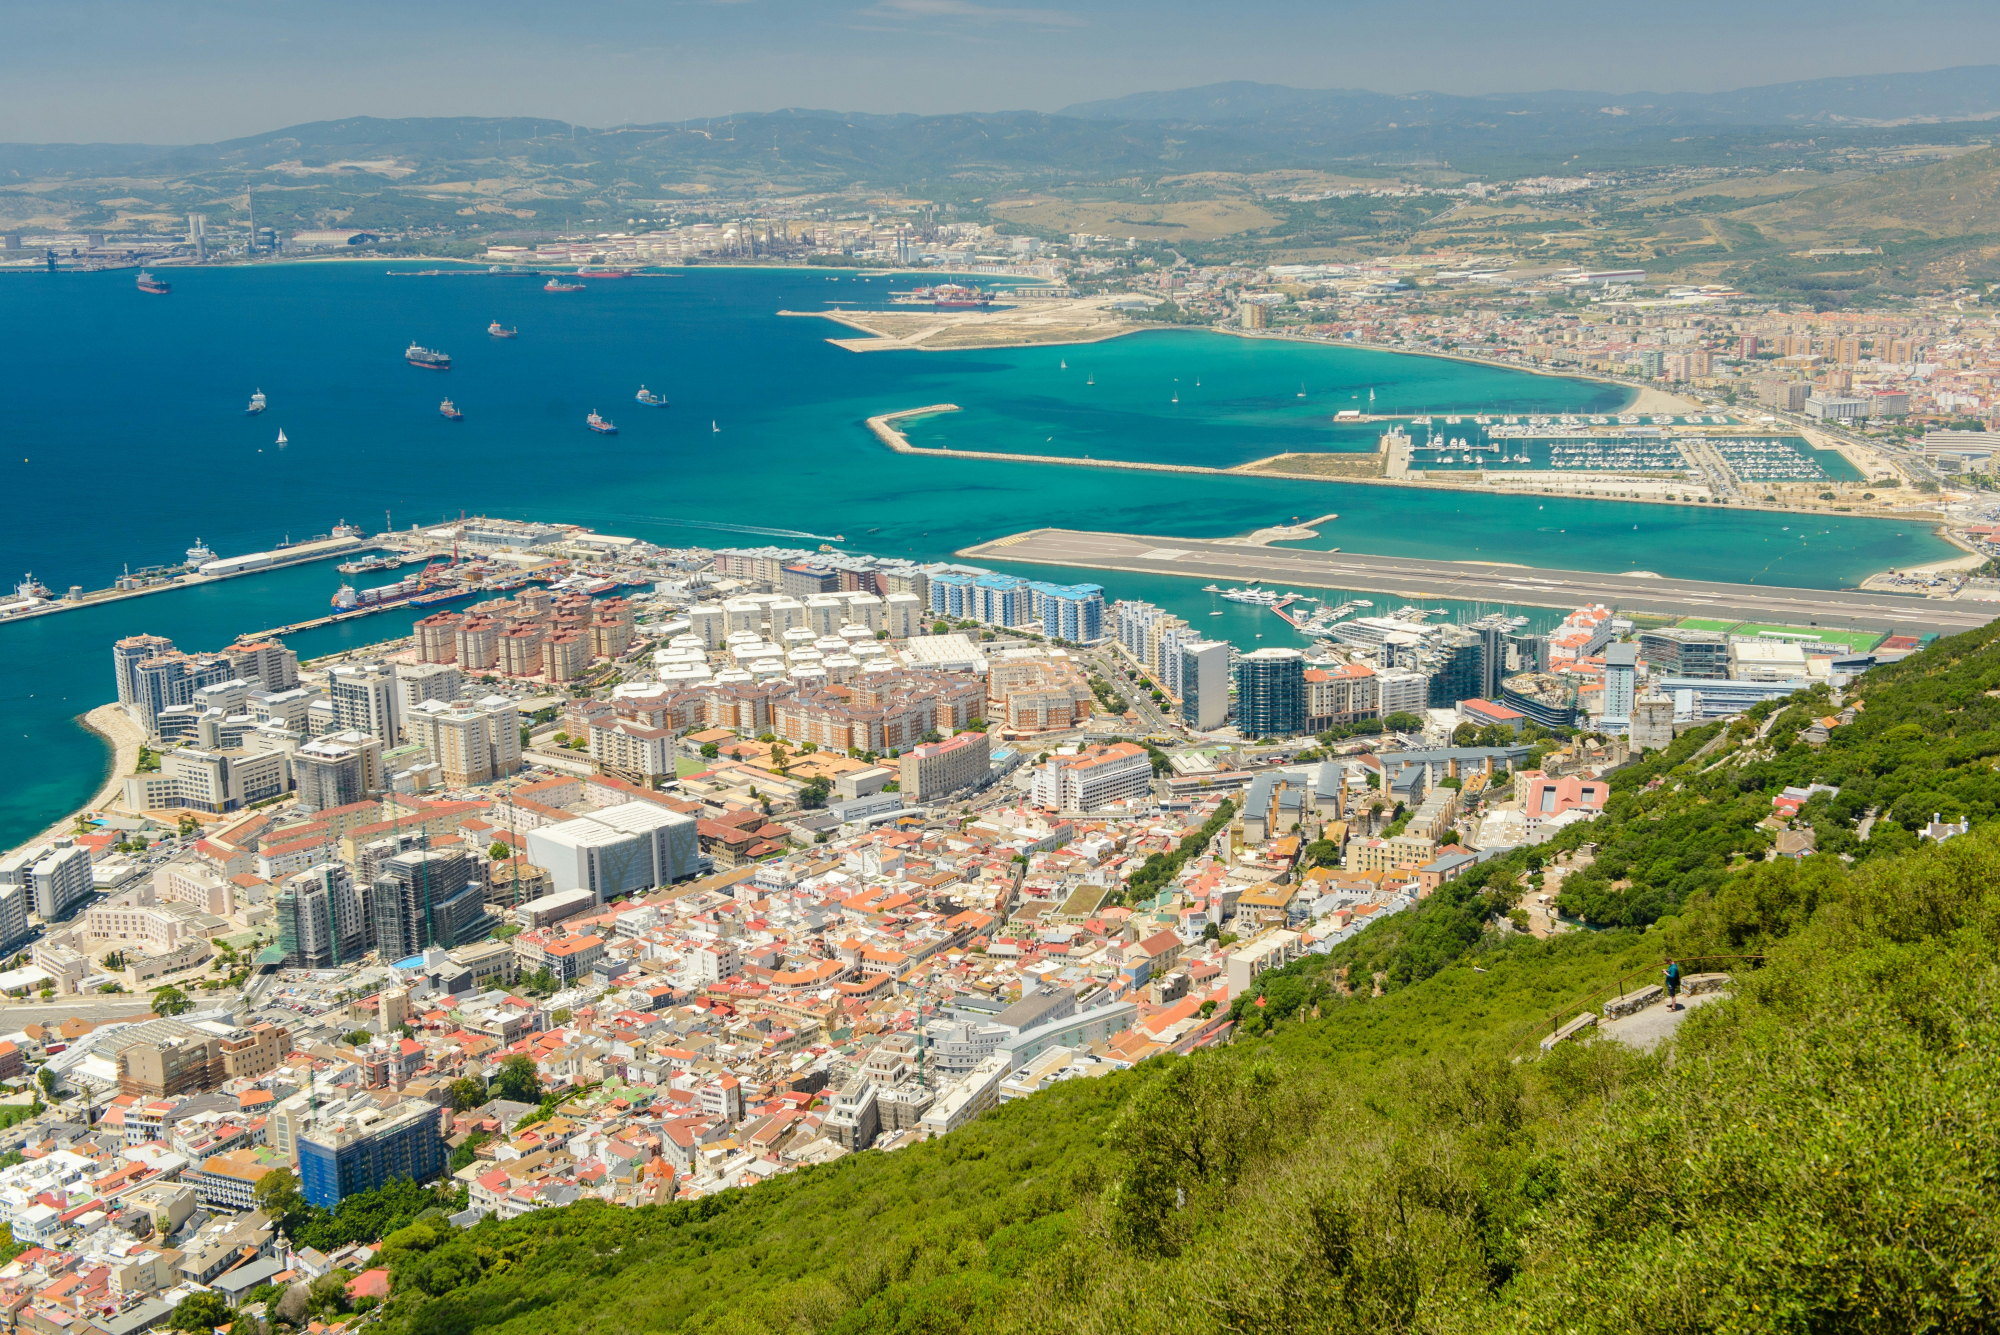 découvrez gibraltar, un territoire britannique d'outre-mer au sud de l'espagne, avec son rocher emblématique et son mélange unique de cultures, entre influences britanniques et espagnoles.